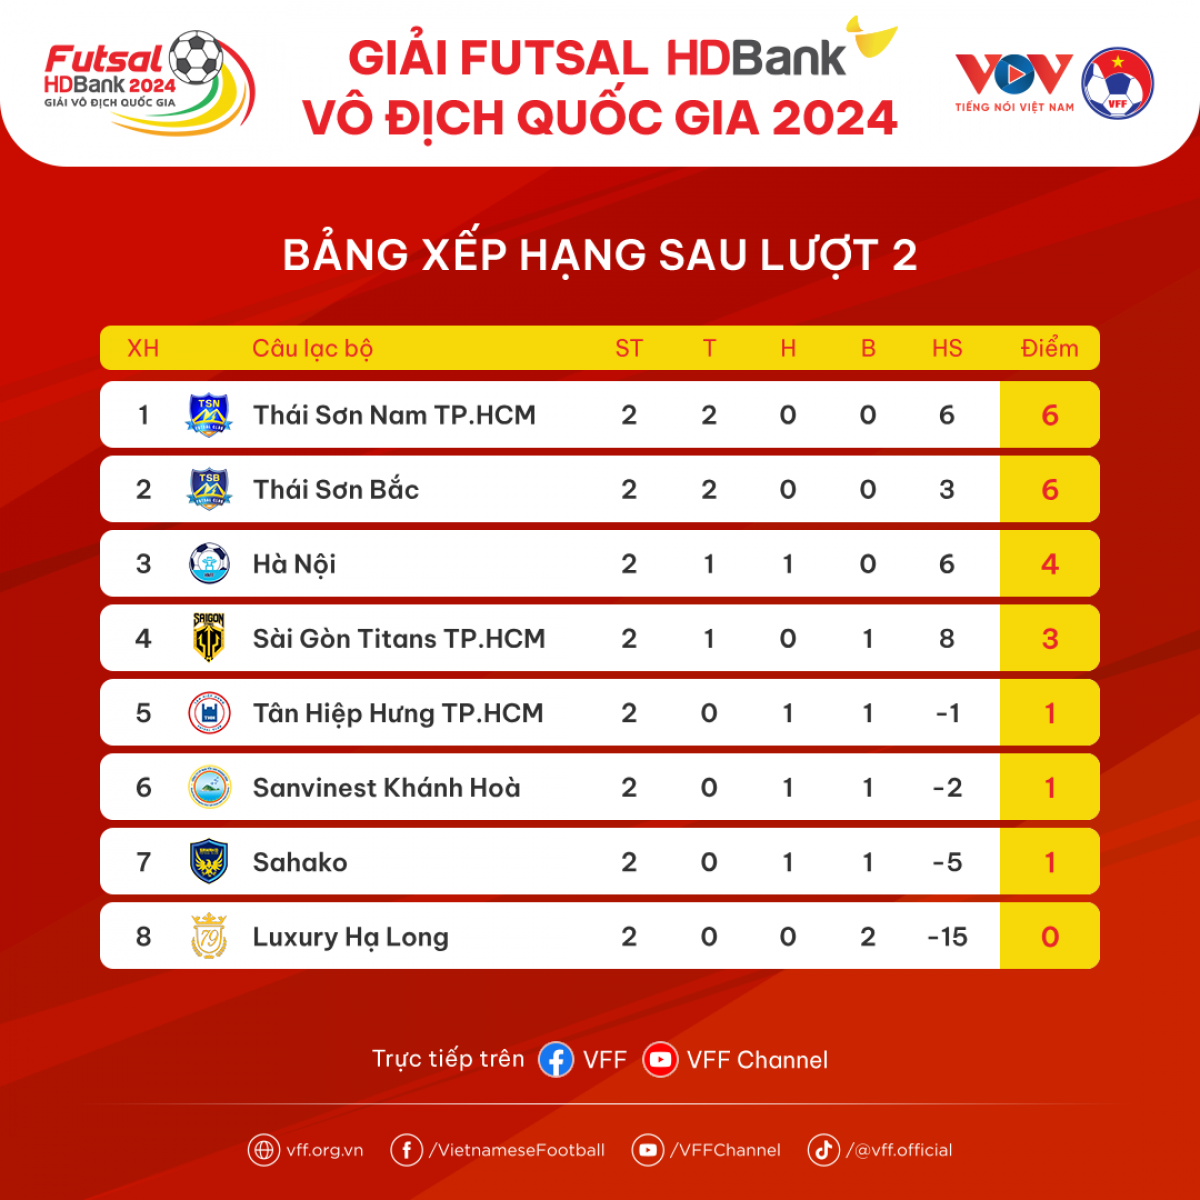 Bảng xếp hạng Futsal HD Bank VĐQG 2024